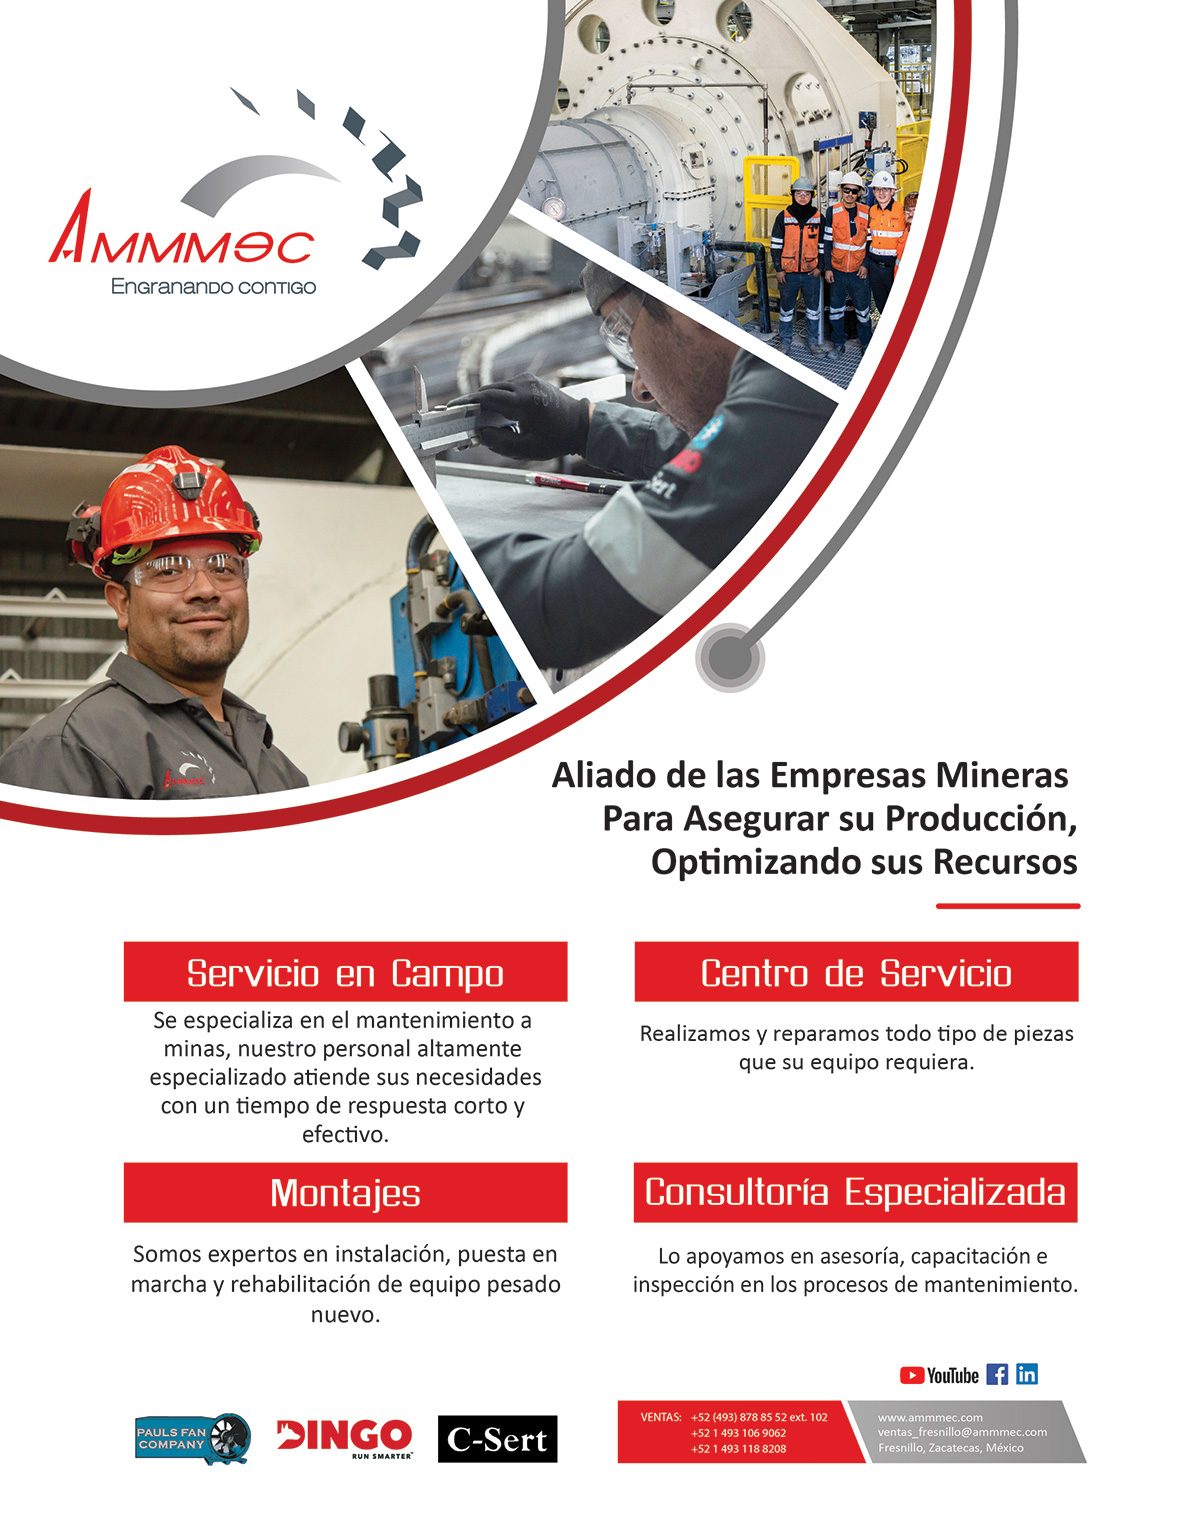 AMMMEC Aliado de las empresas mineras